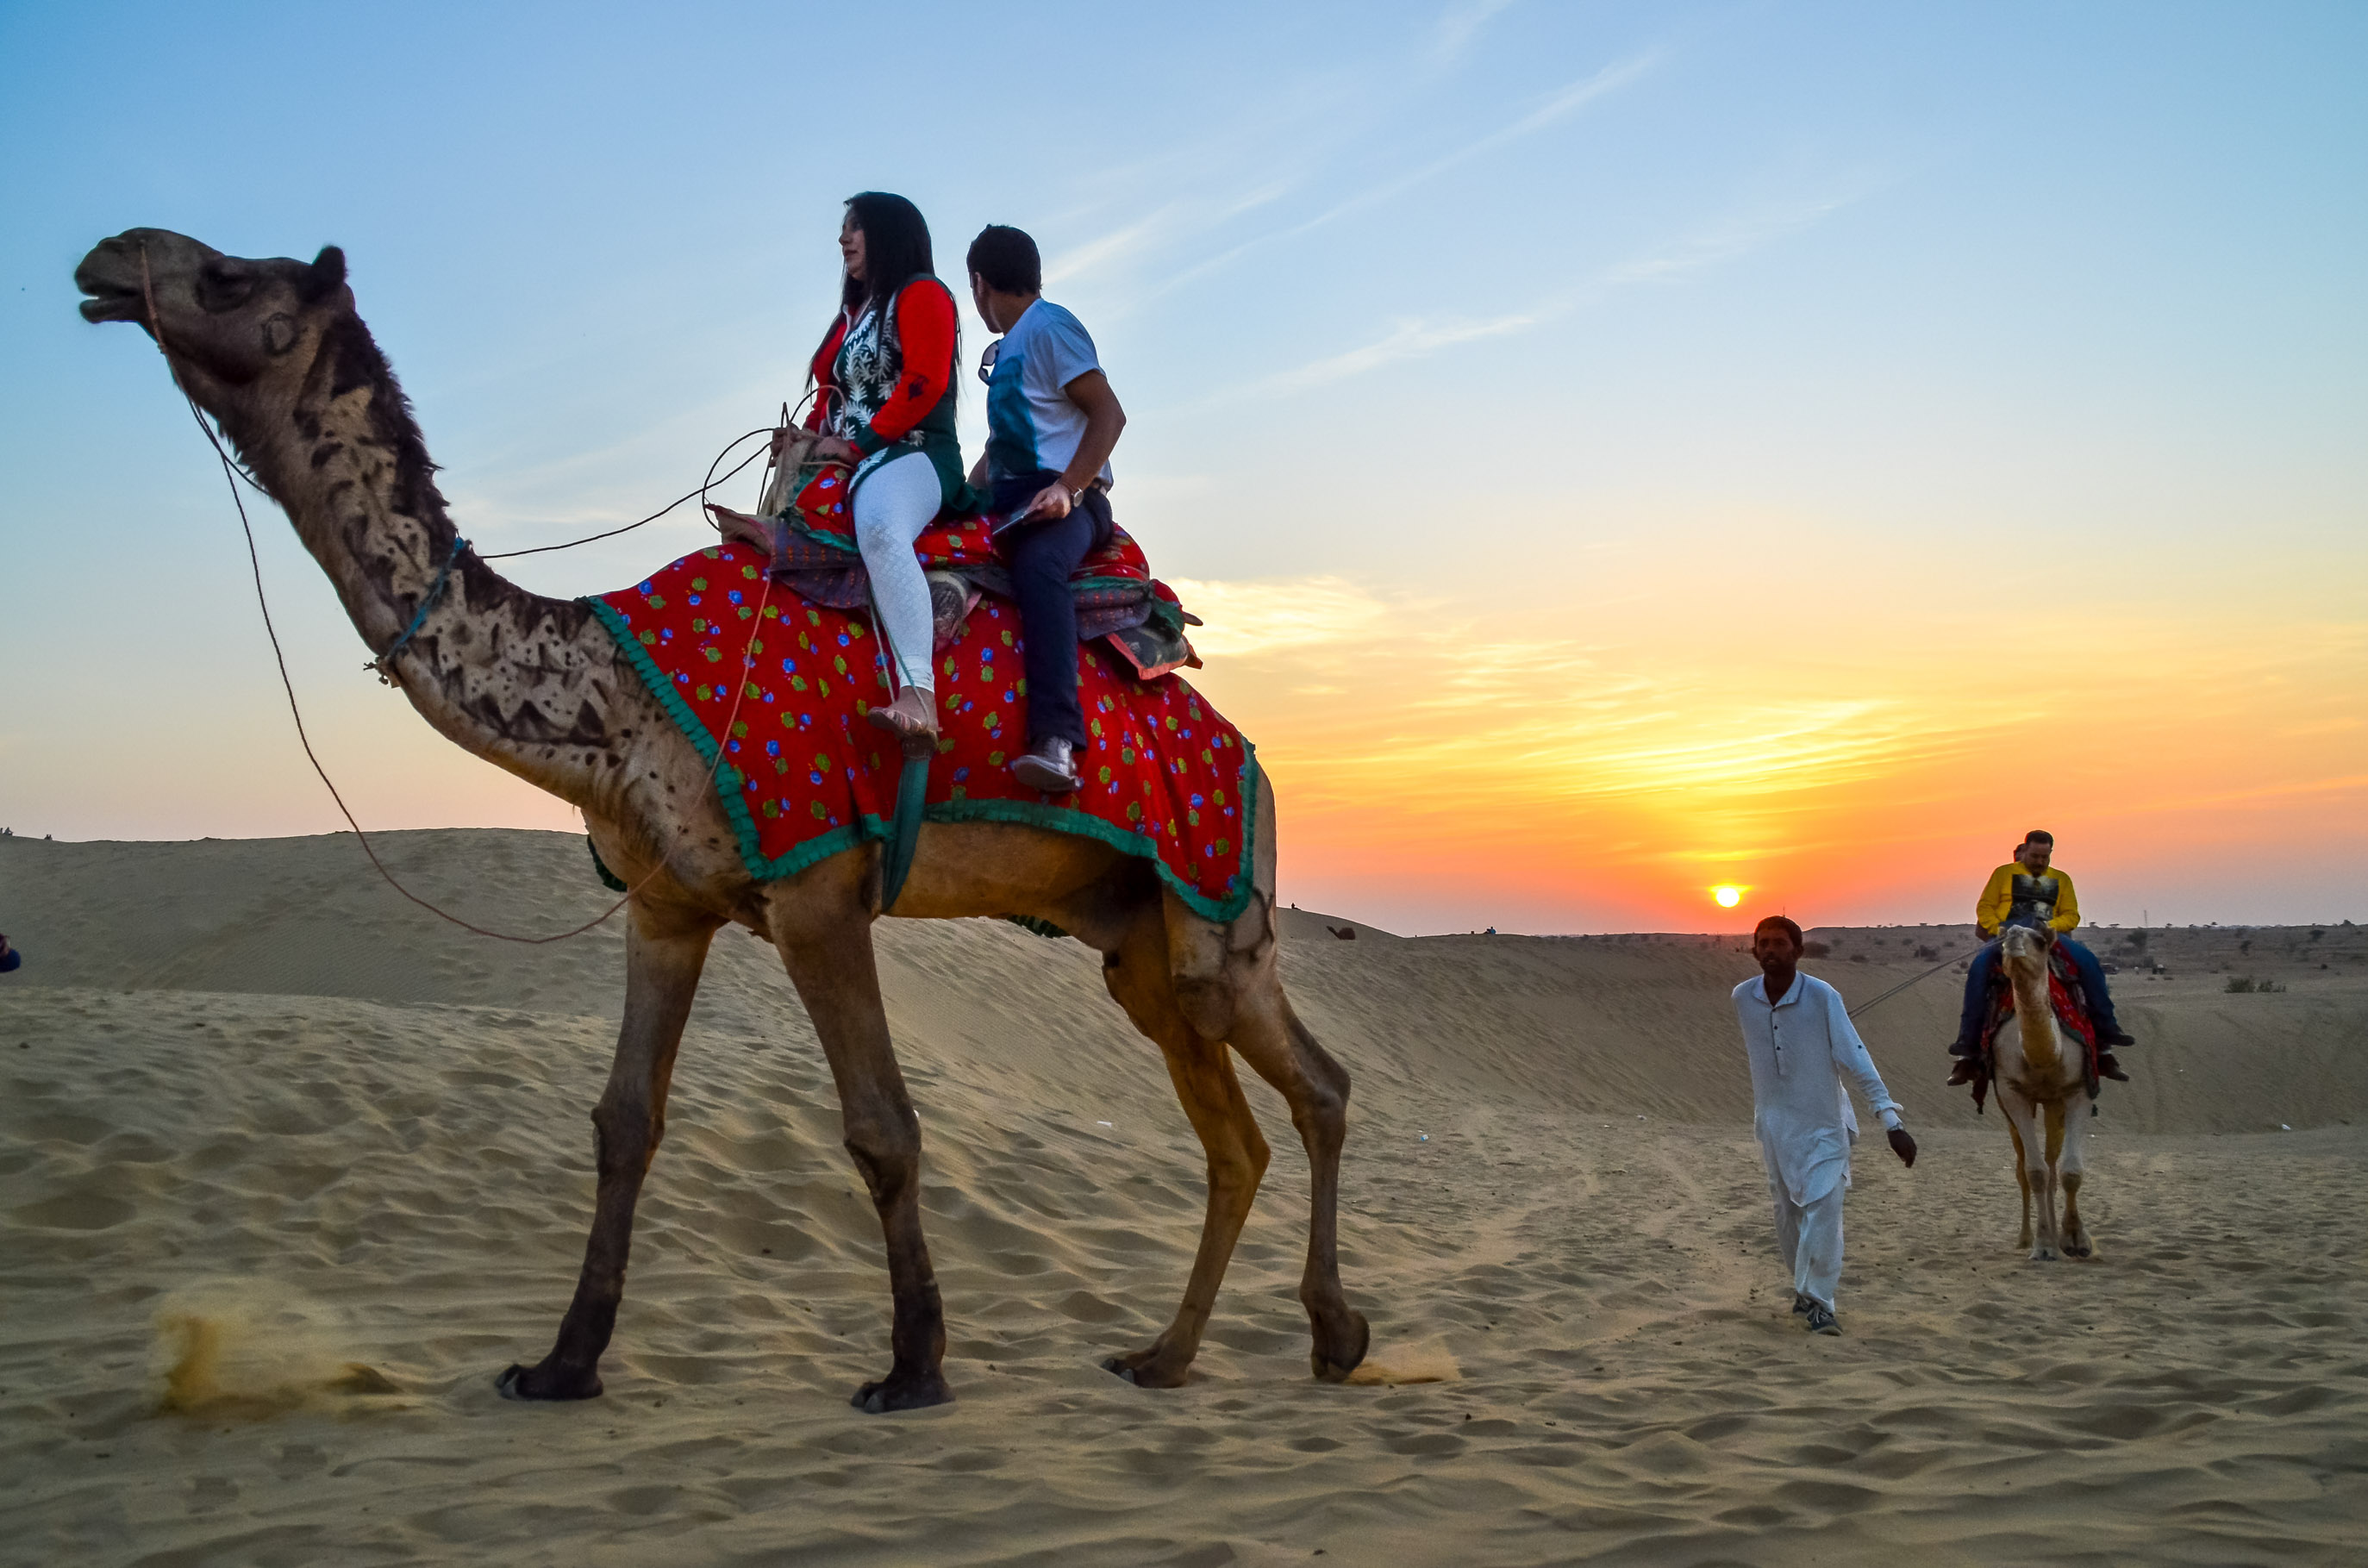 Camel Safari near Jaisalmer, Rajasthan